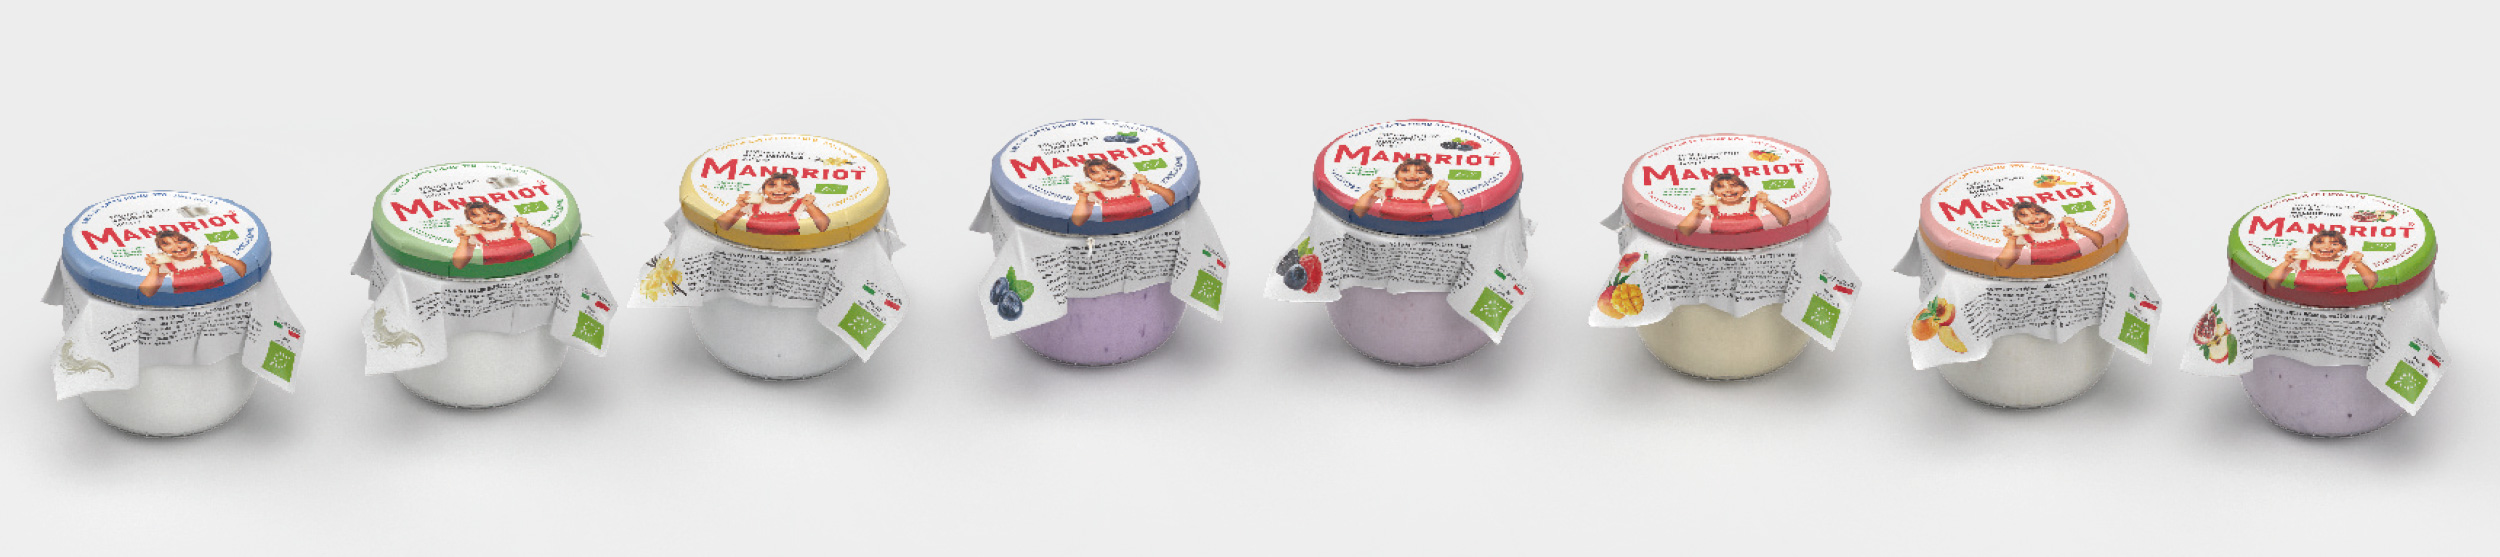 mandriot-packaging-yogurt-chiani